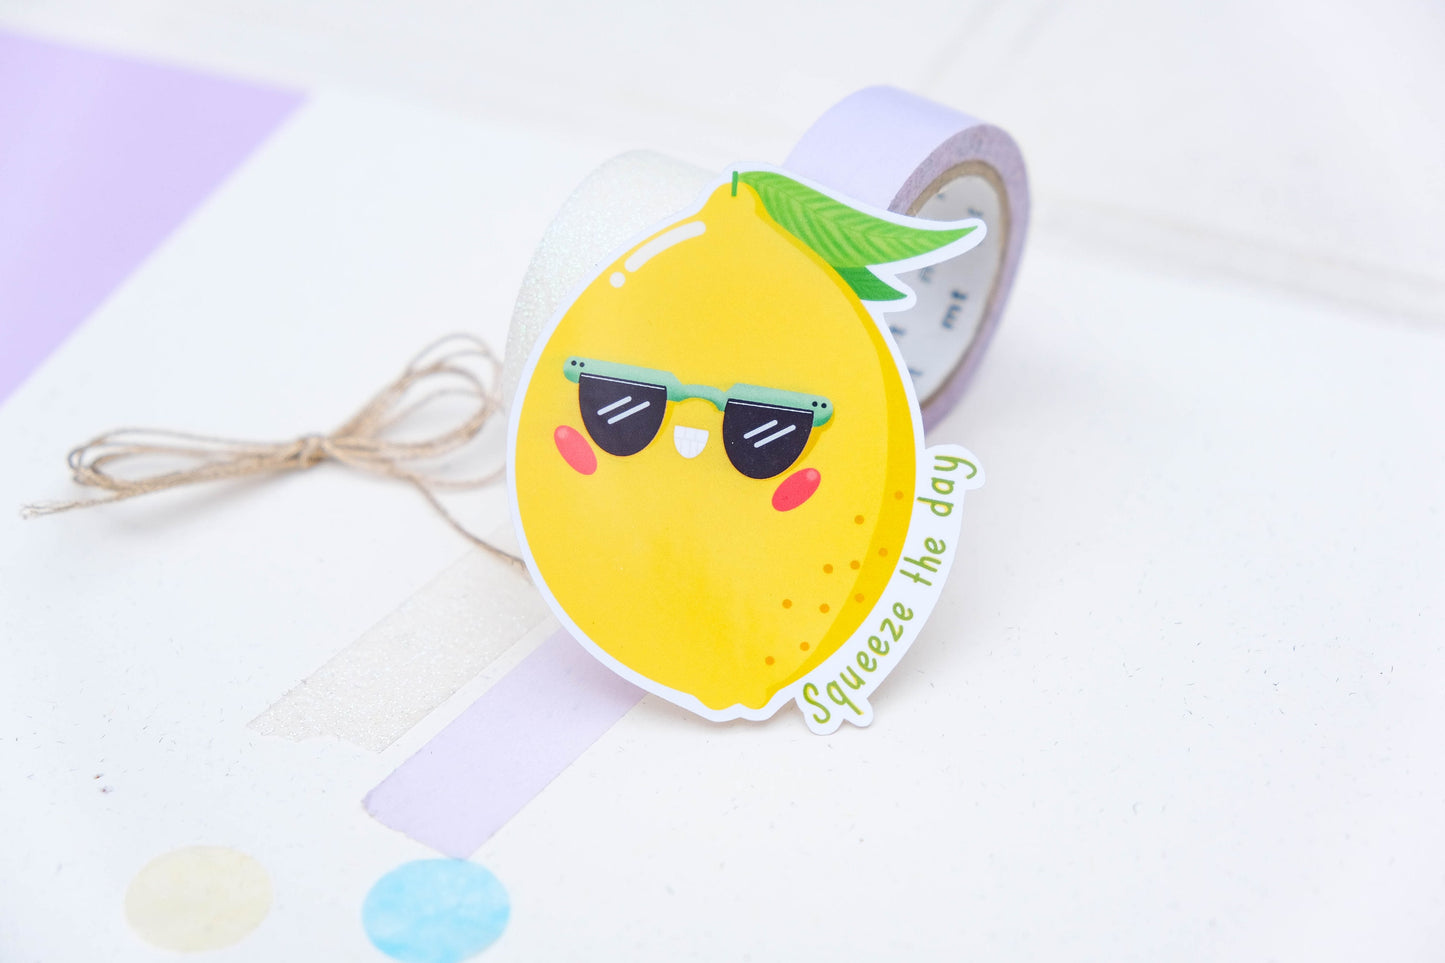 Sticker Cute Little Lemon - Lemonade Sticker - Water Resistant Sticker - Cute Lemon Sticker for Laptop - Squeeze the Day